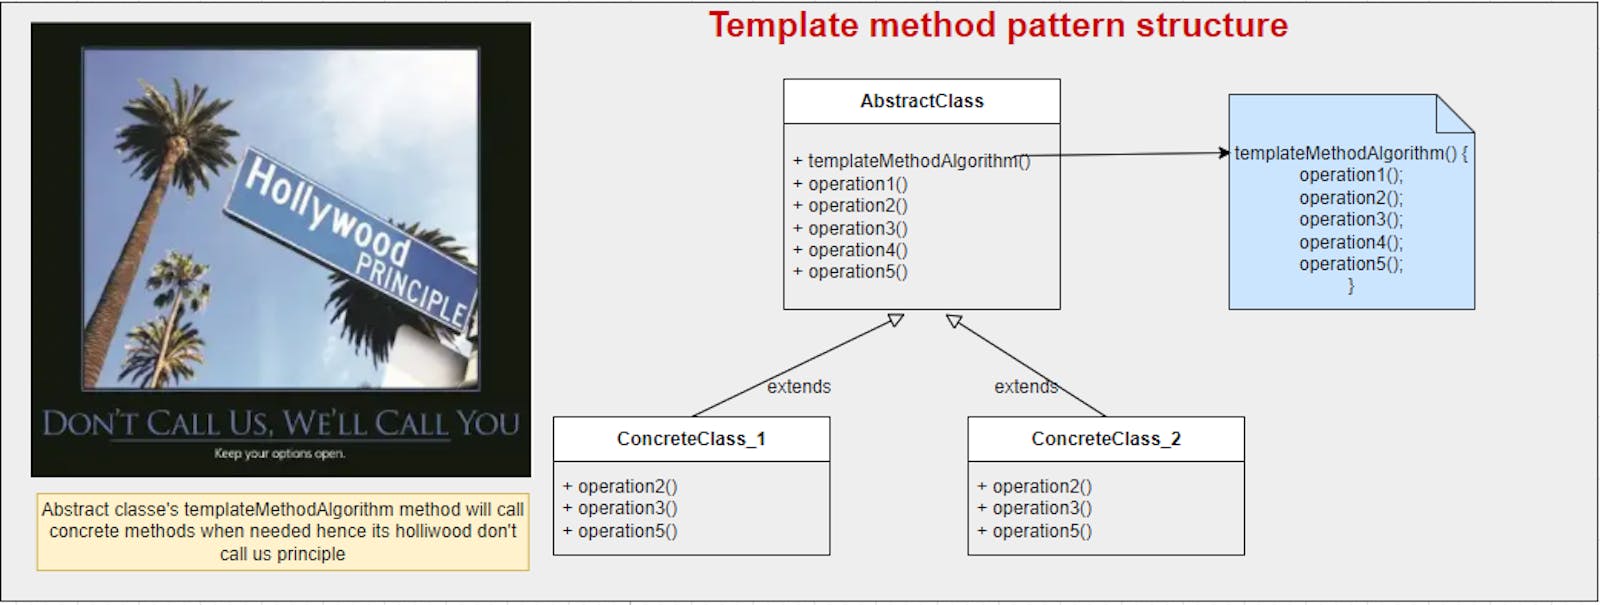 Template method pattern - Java - Explained